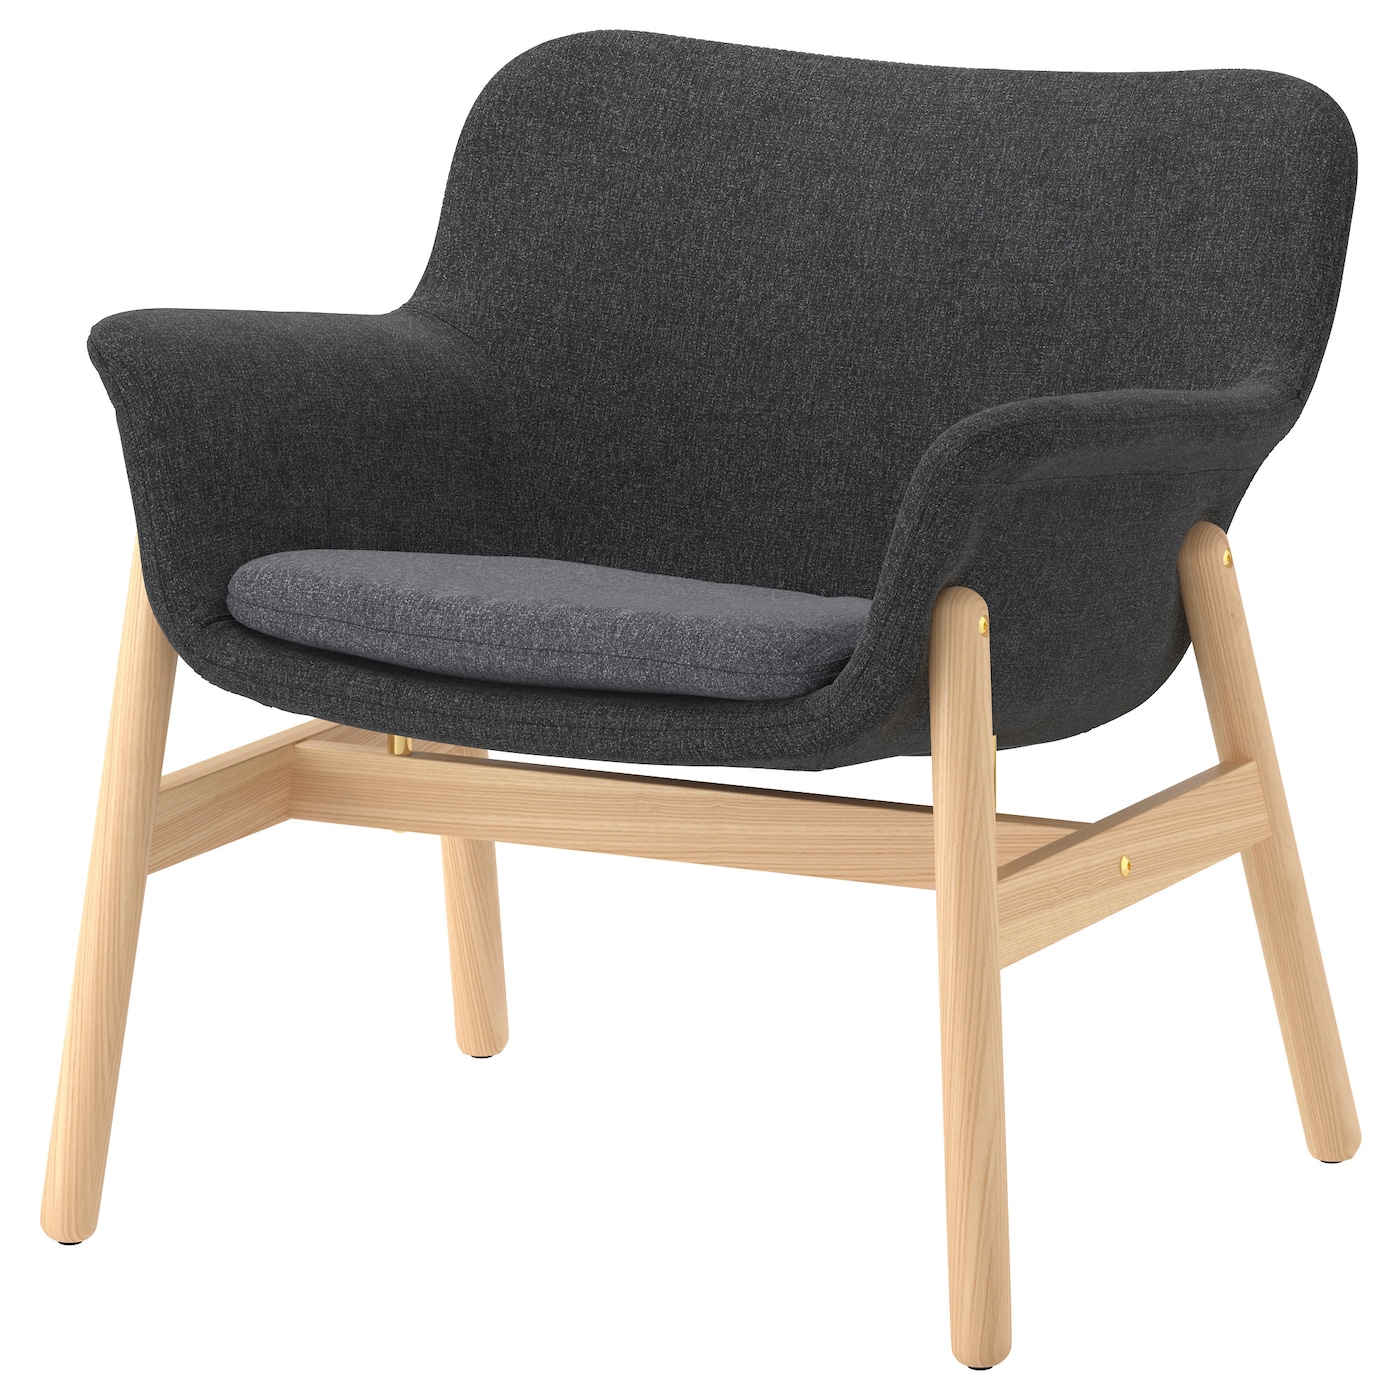 ВЕДБО Кресло, Гуннаред темно-серый VEDBO IKEA стул кресло martin серый rf 0569